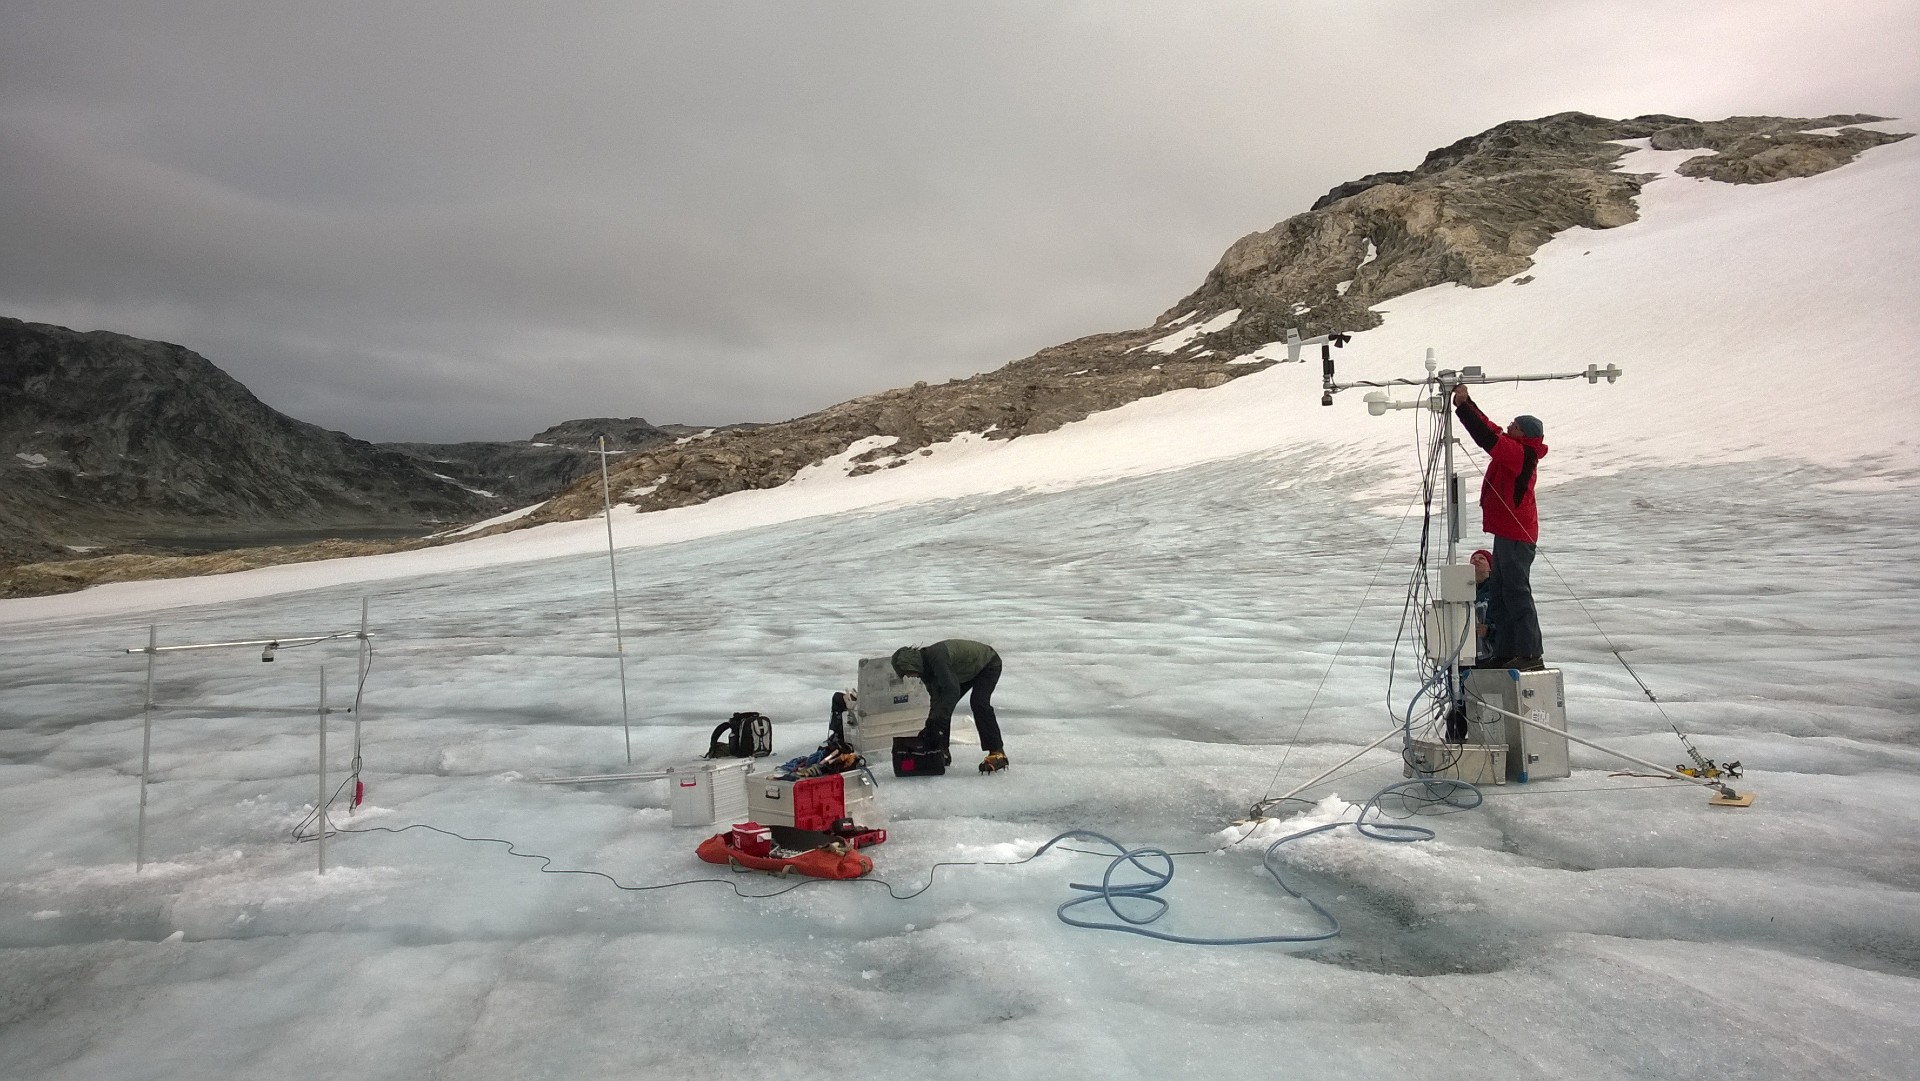 Måling af is i Grønland. (Foto: DTU Space)